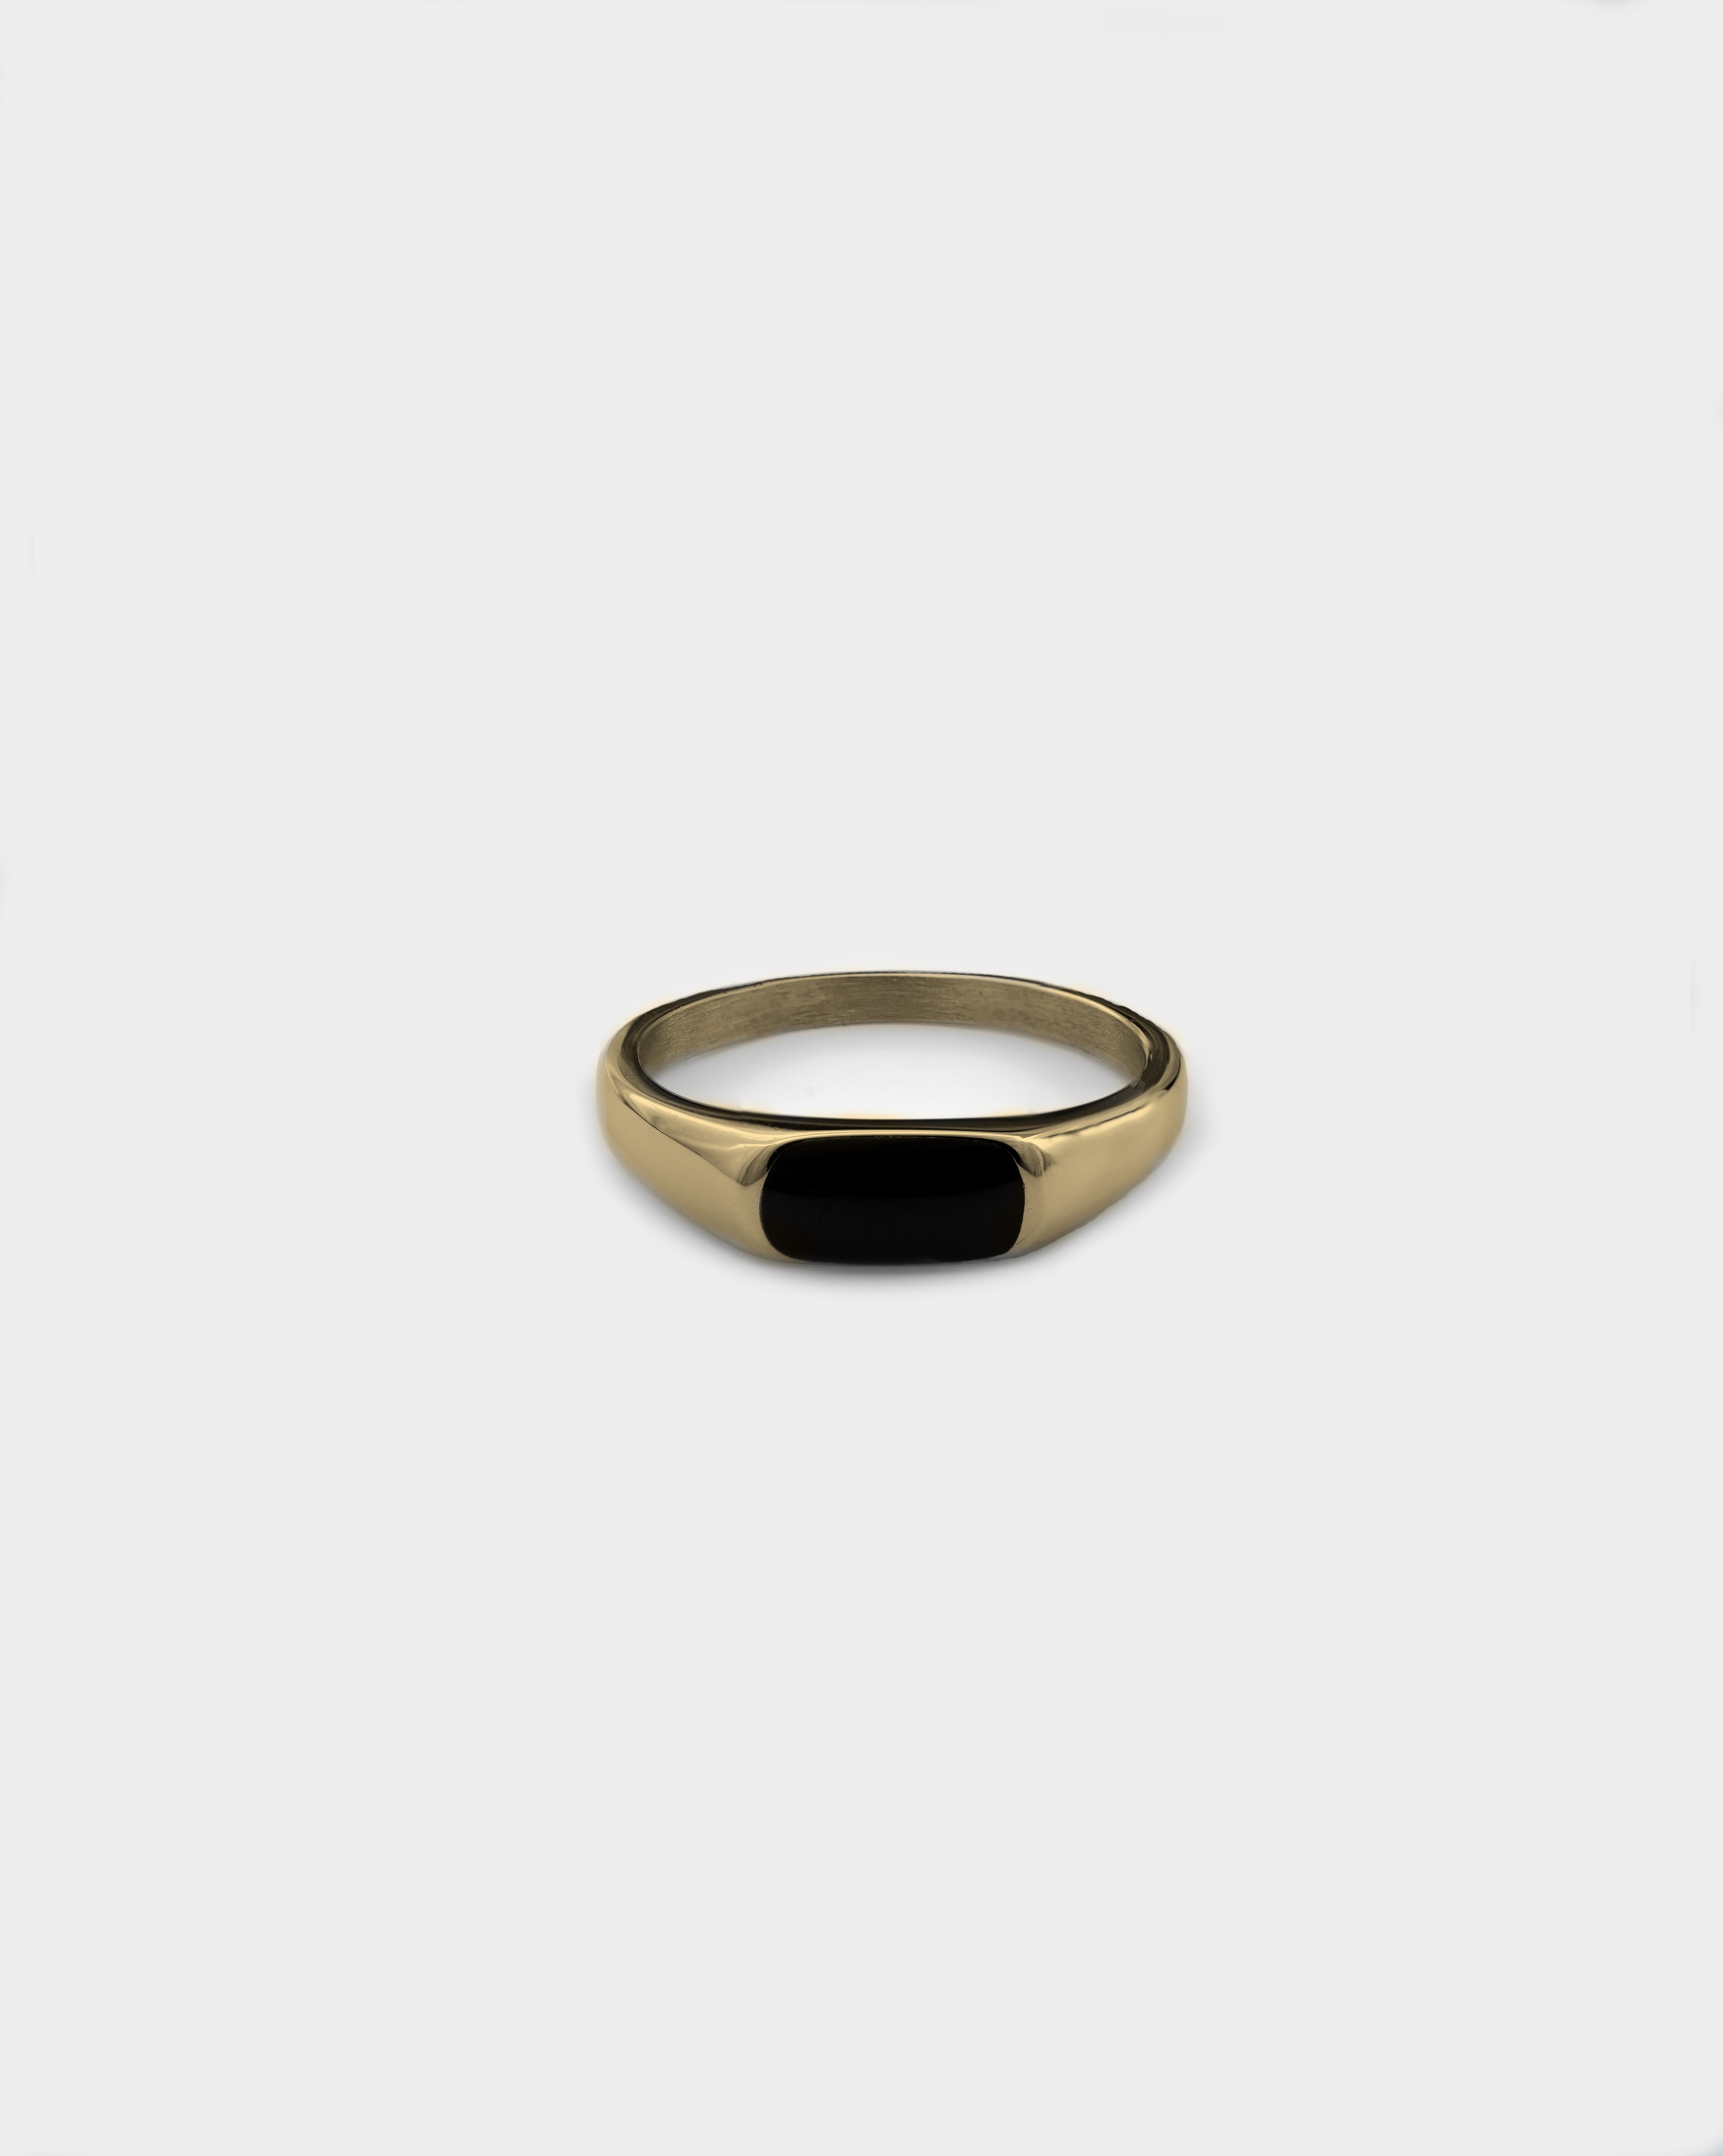 Buy Kasturi Gold Ring | kasturidiamond.com